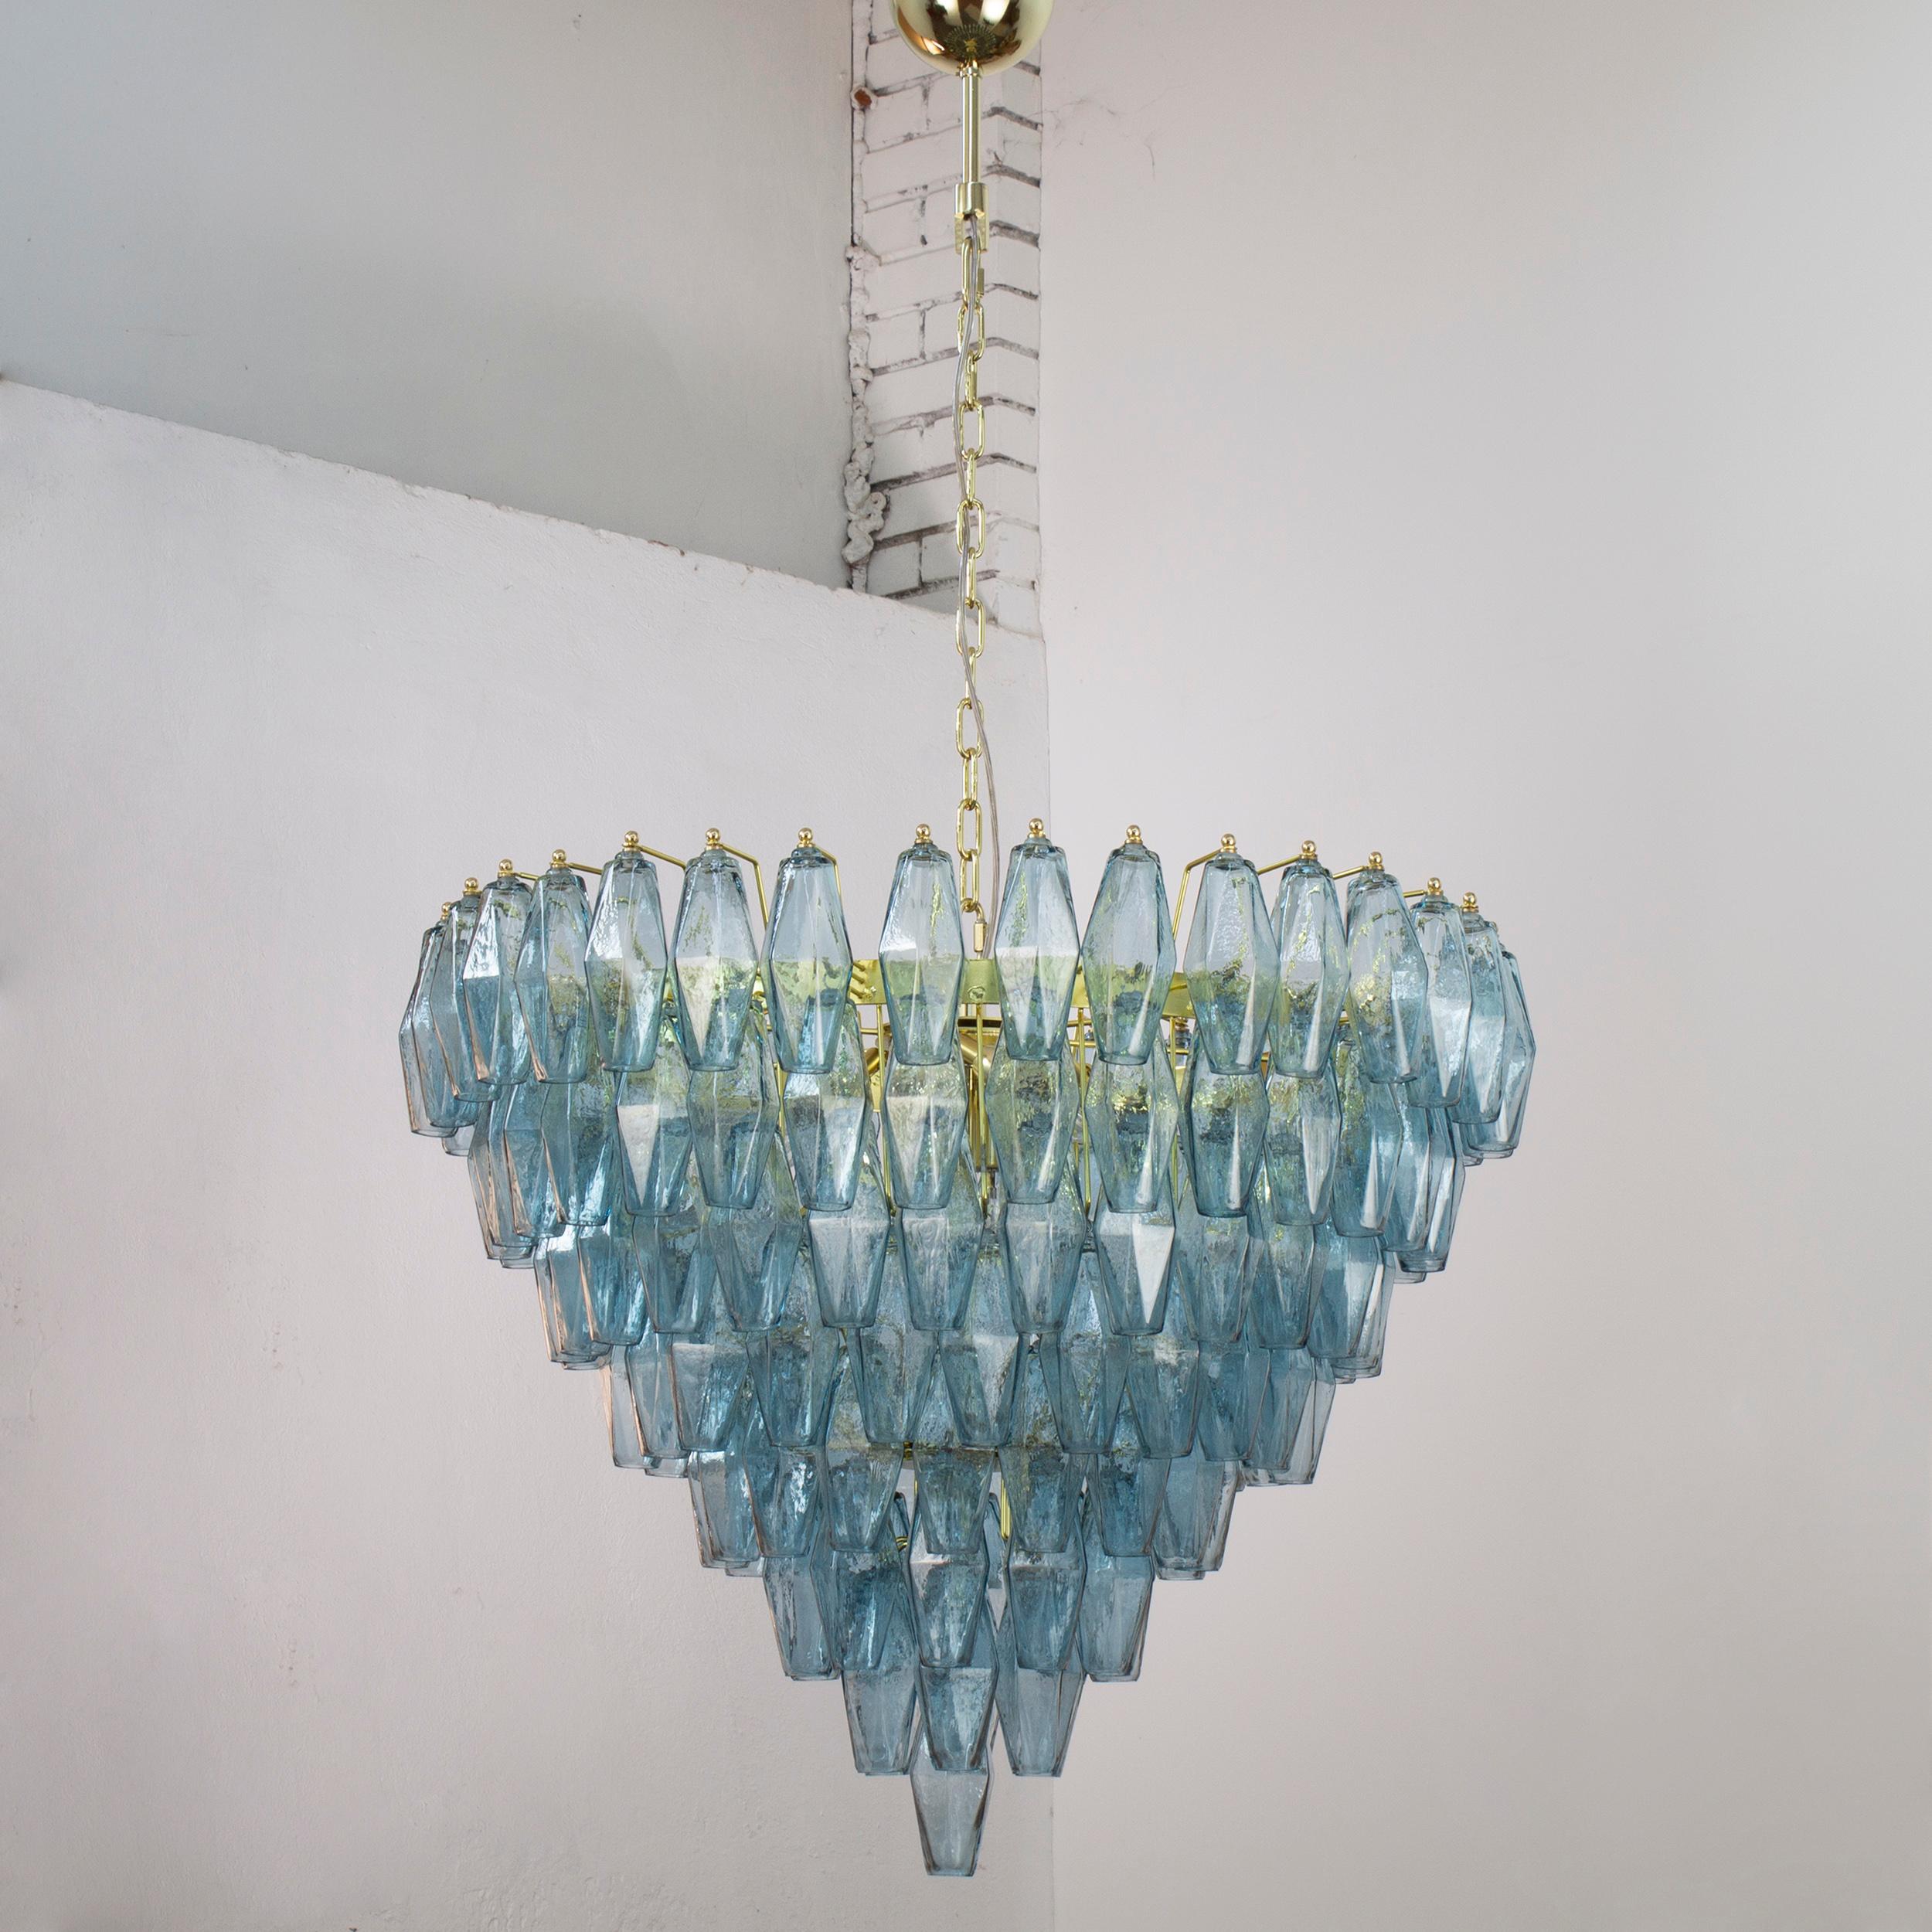 Grande lampadario con poliedri colore blu avio in vetro di Murano ispirato al mid-century italiano

Direttamente dalla fonte:
Non siamo semplici rivenditori, ma produttori diretti! Situate vicino a Venezia, nel cuore dell'industria vetraria di